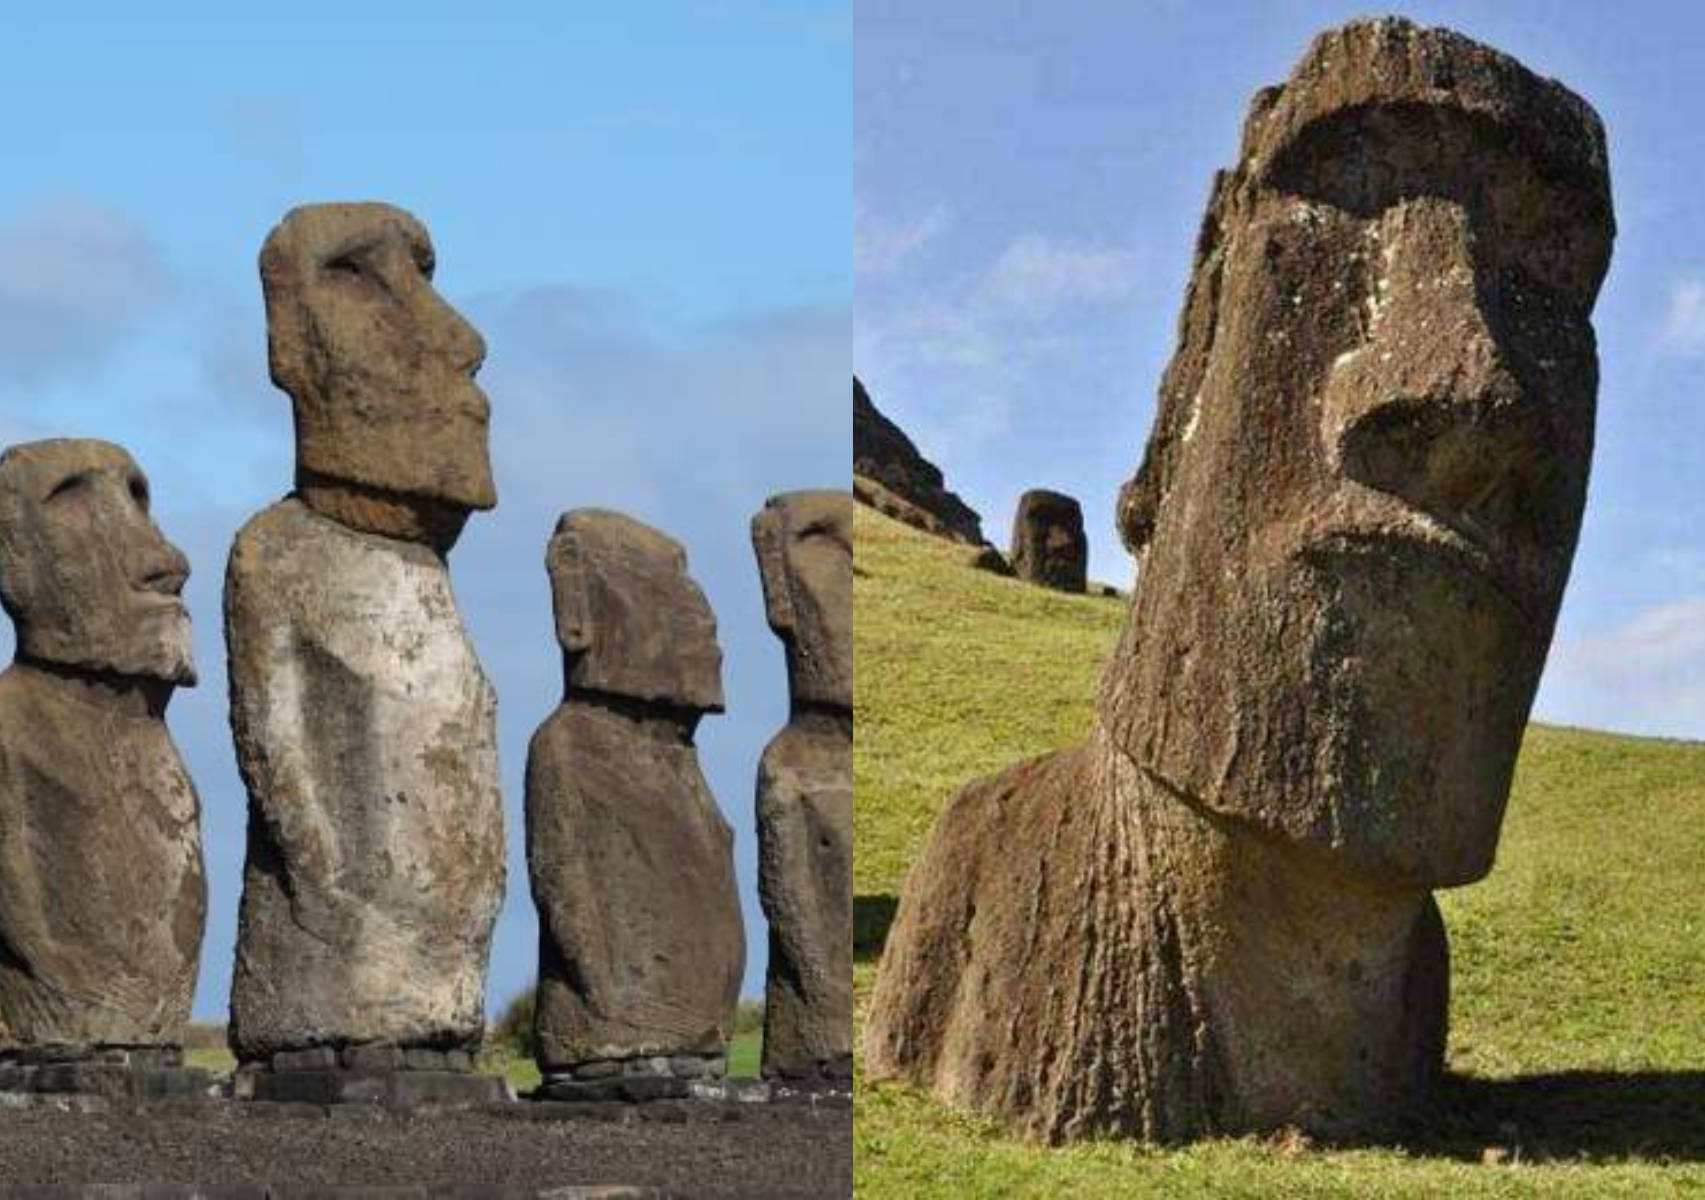 Νησί του Πάσχα: Το μυστήριο με τα αγάλματα που περπατούν- Που σταματά η αλήθεια και που αρχίζει ο μύθος